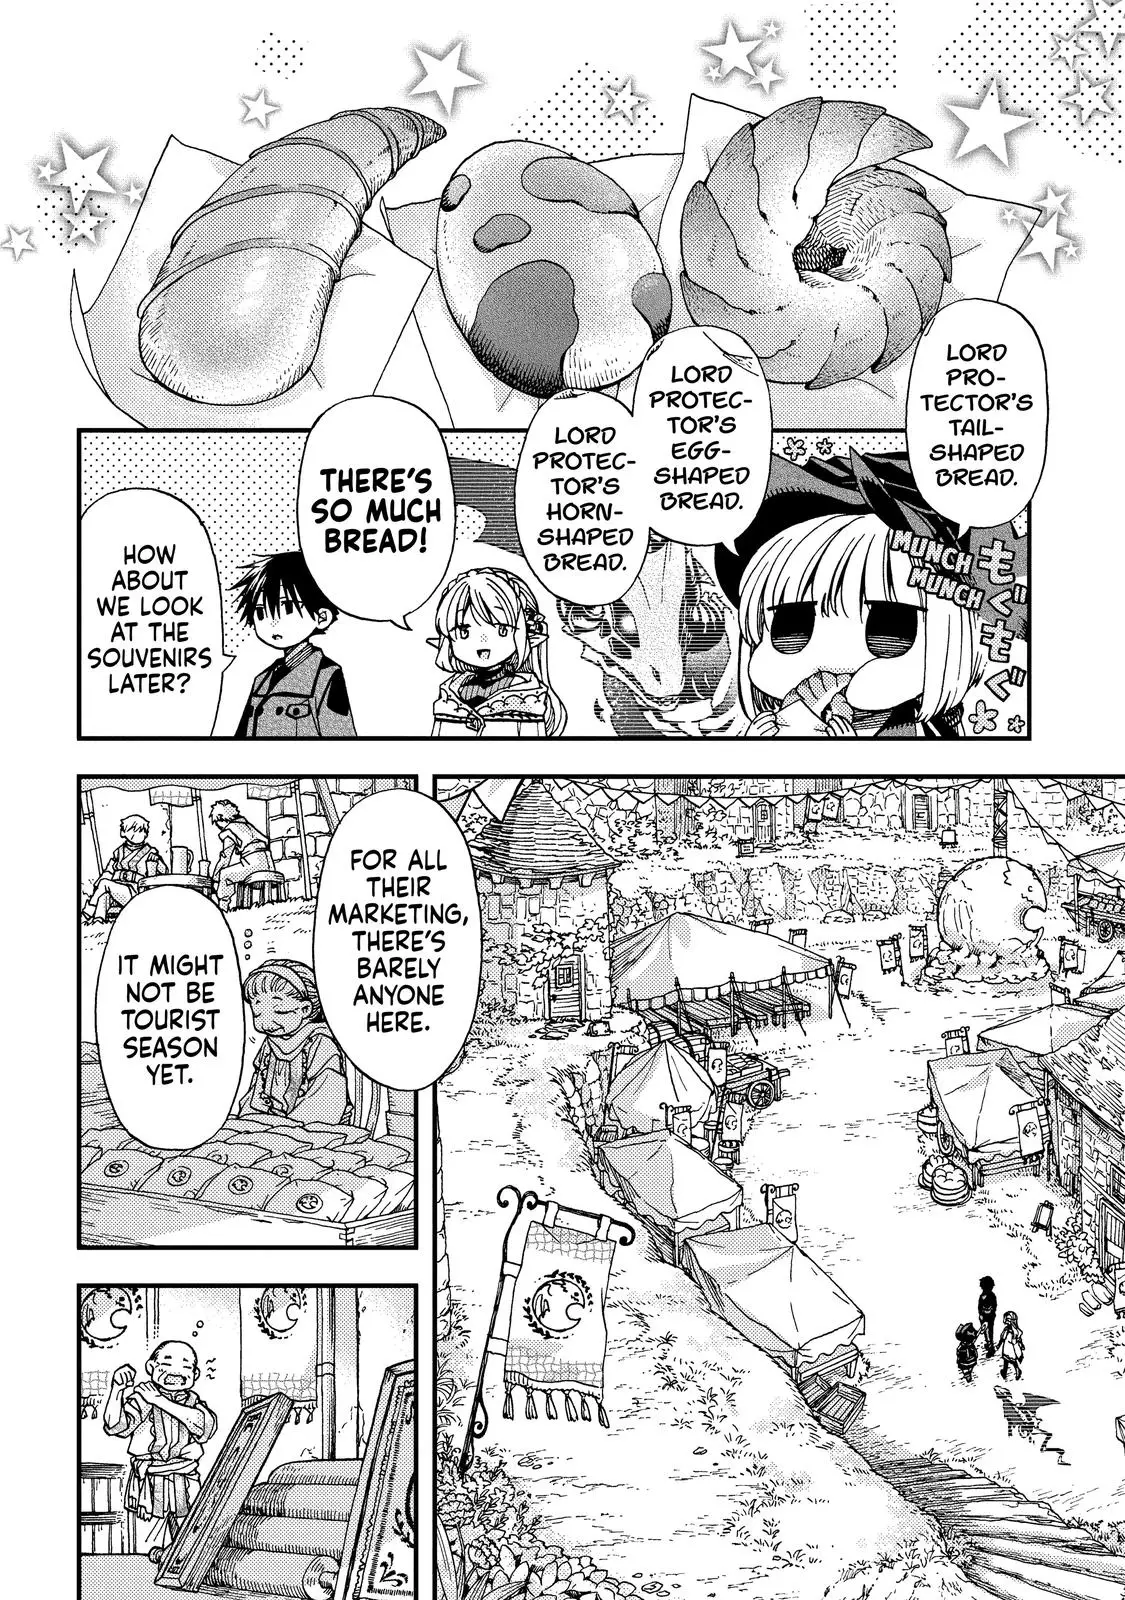 Hone Dragon No Mana Musume - 16 page 6-209795b1